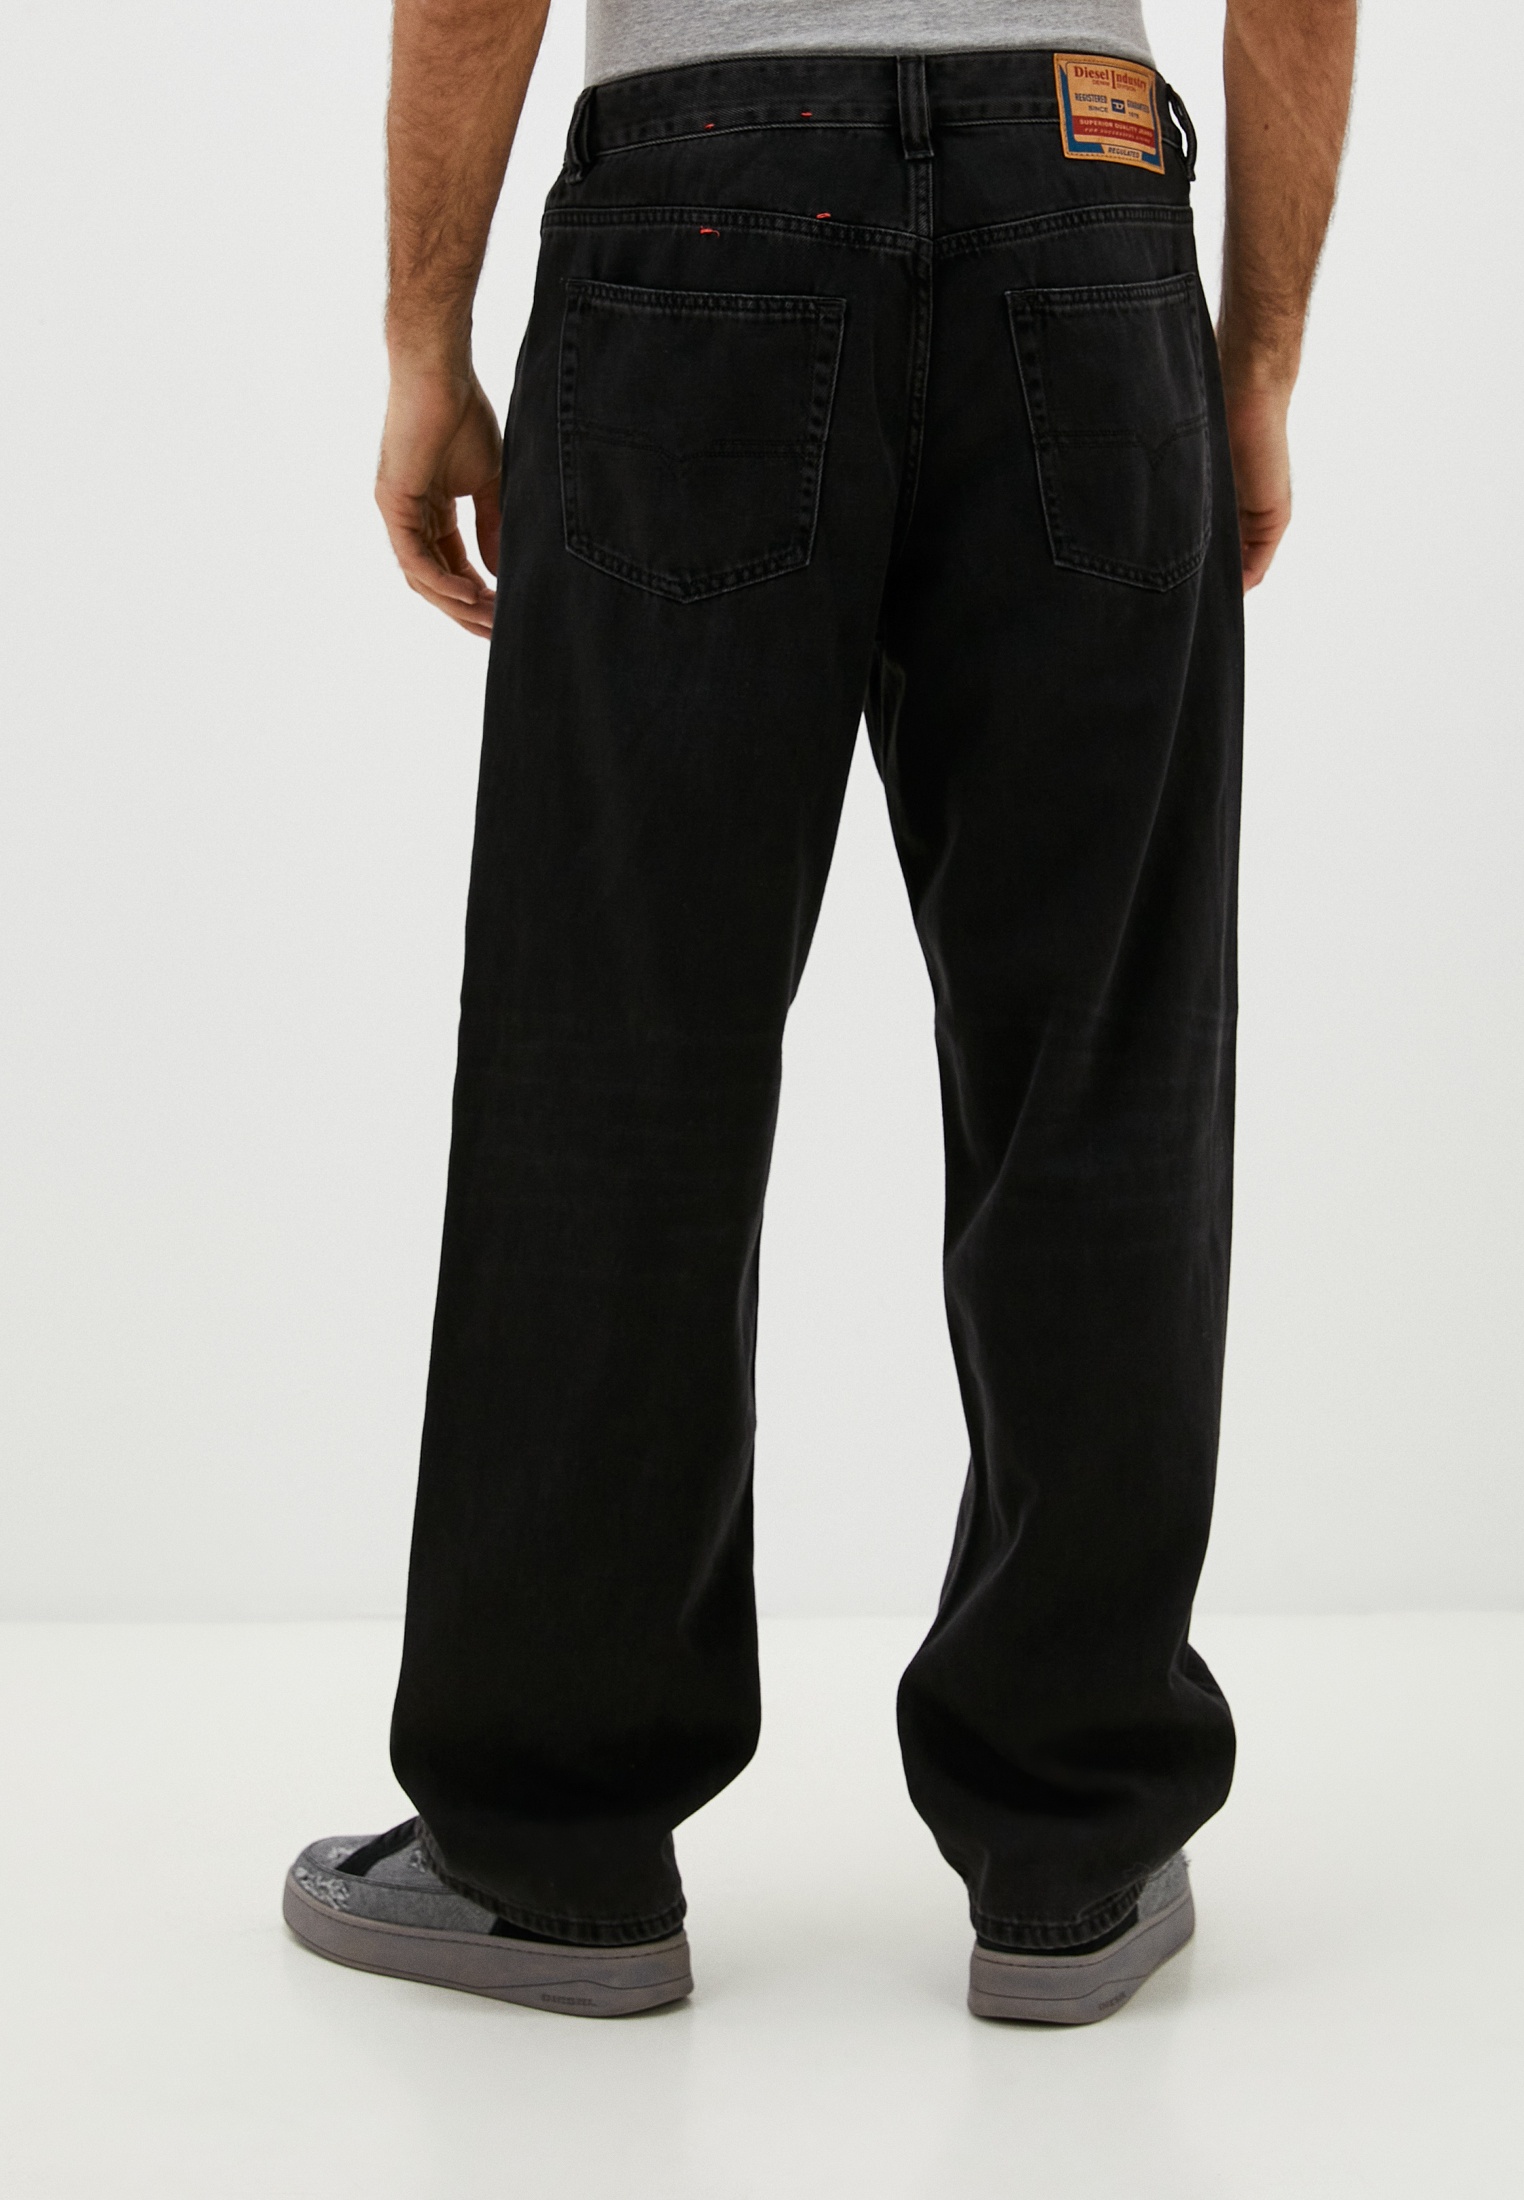 Мужские прямые джинсы Diesel (Дизель) A1159809I35: изображение 3